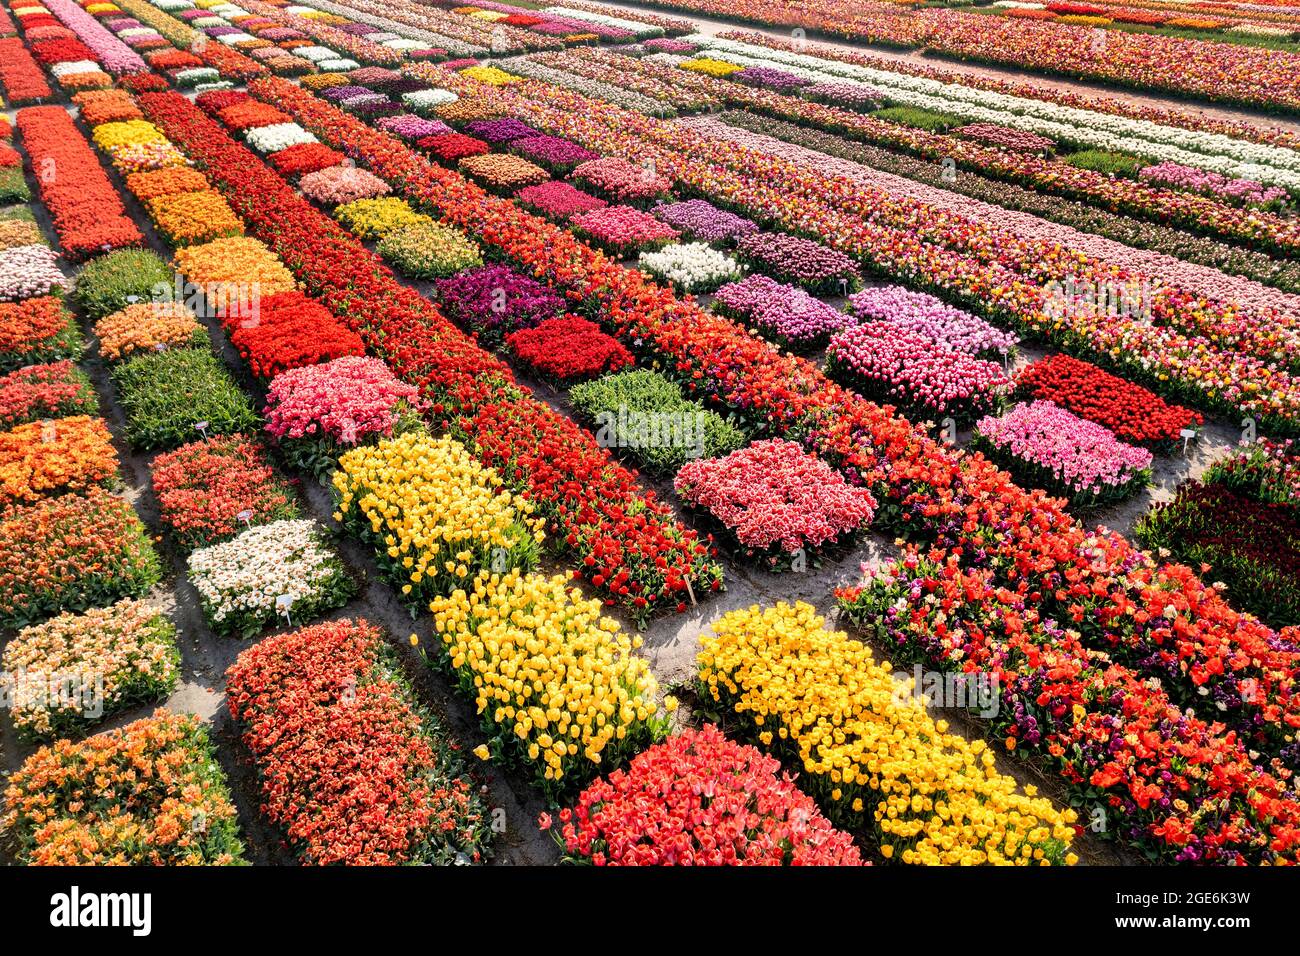 The Netherlands, Noordwijkerhout, Tulips, tulip fields. Aerial. Stock Photo